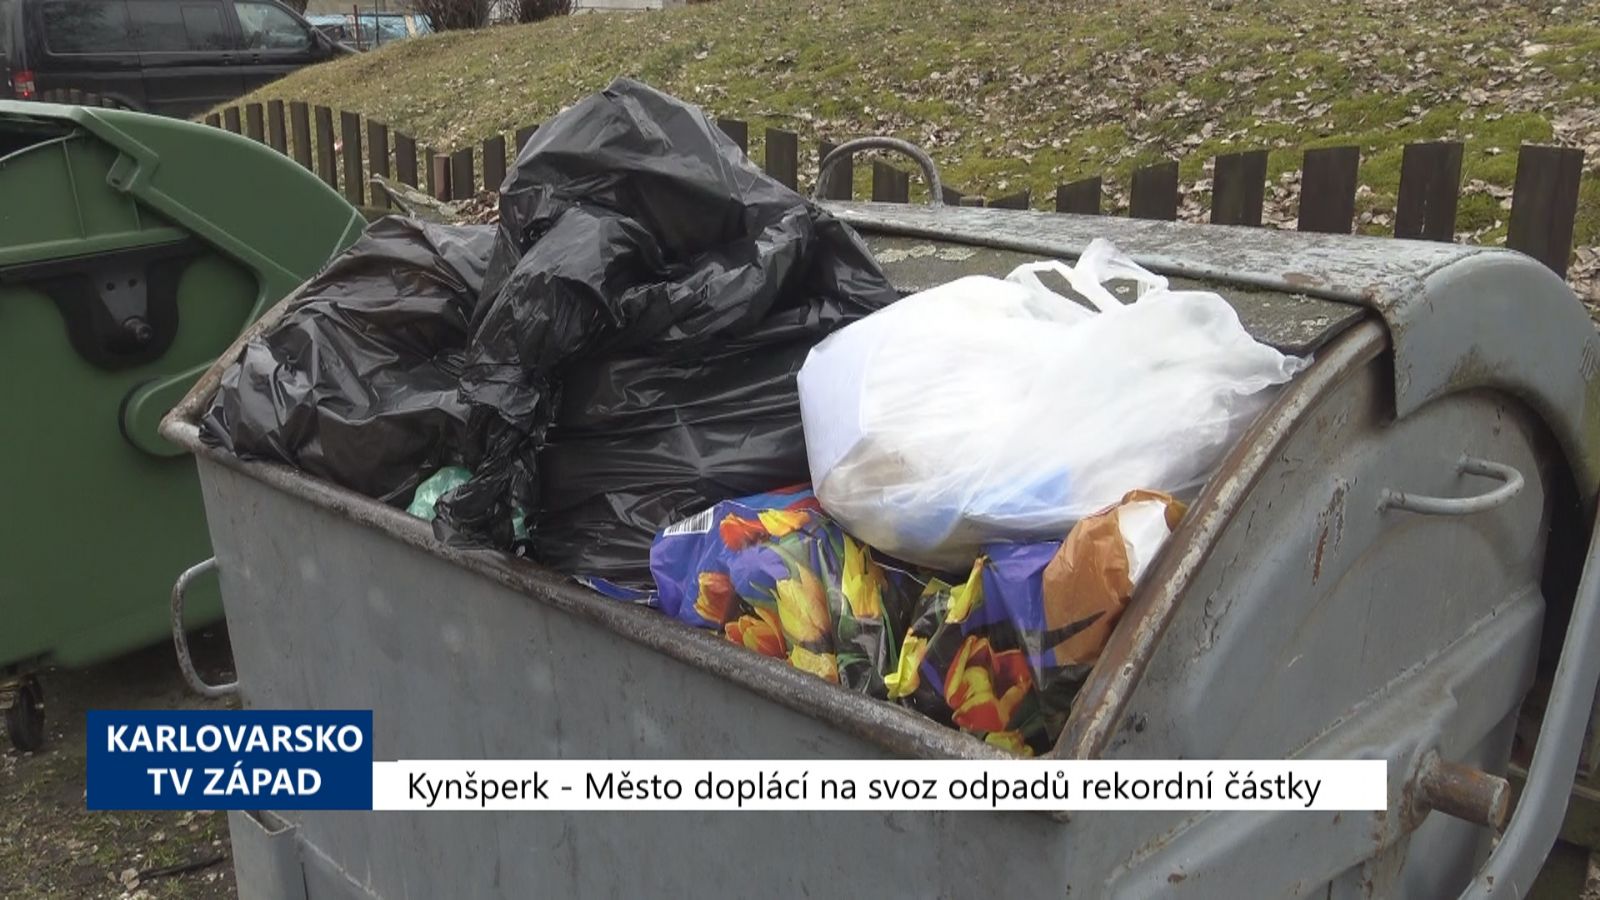 Kynšperk: Město doplácí na svoz odpadu rekordní částky (TV Západ)